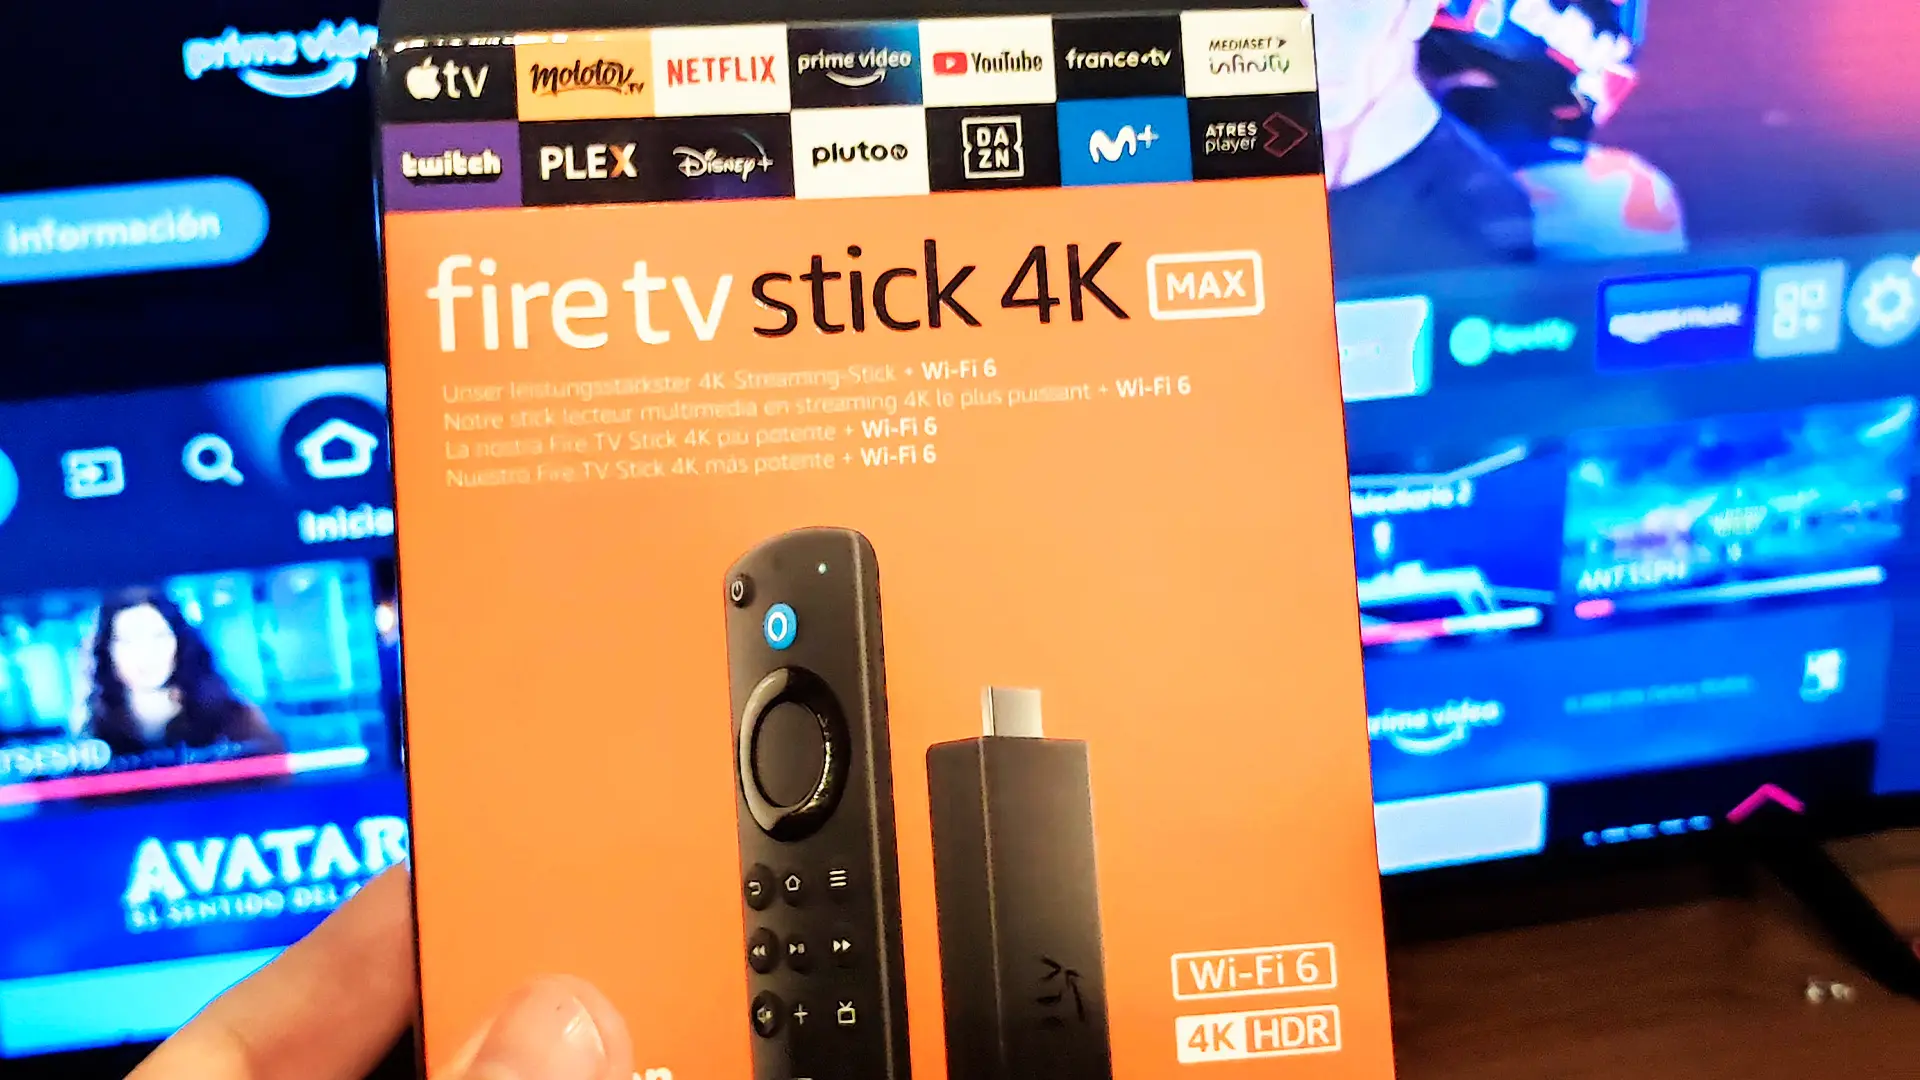 Experiencia inigualable: Fire TV Stick 4K Max y sus características estelares